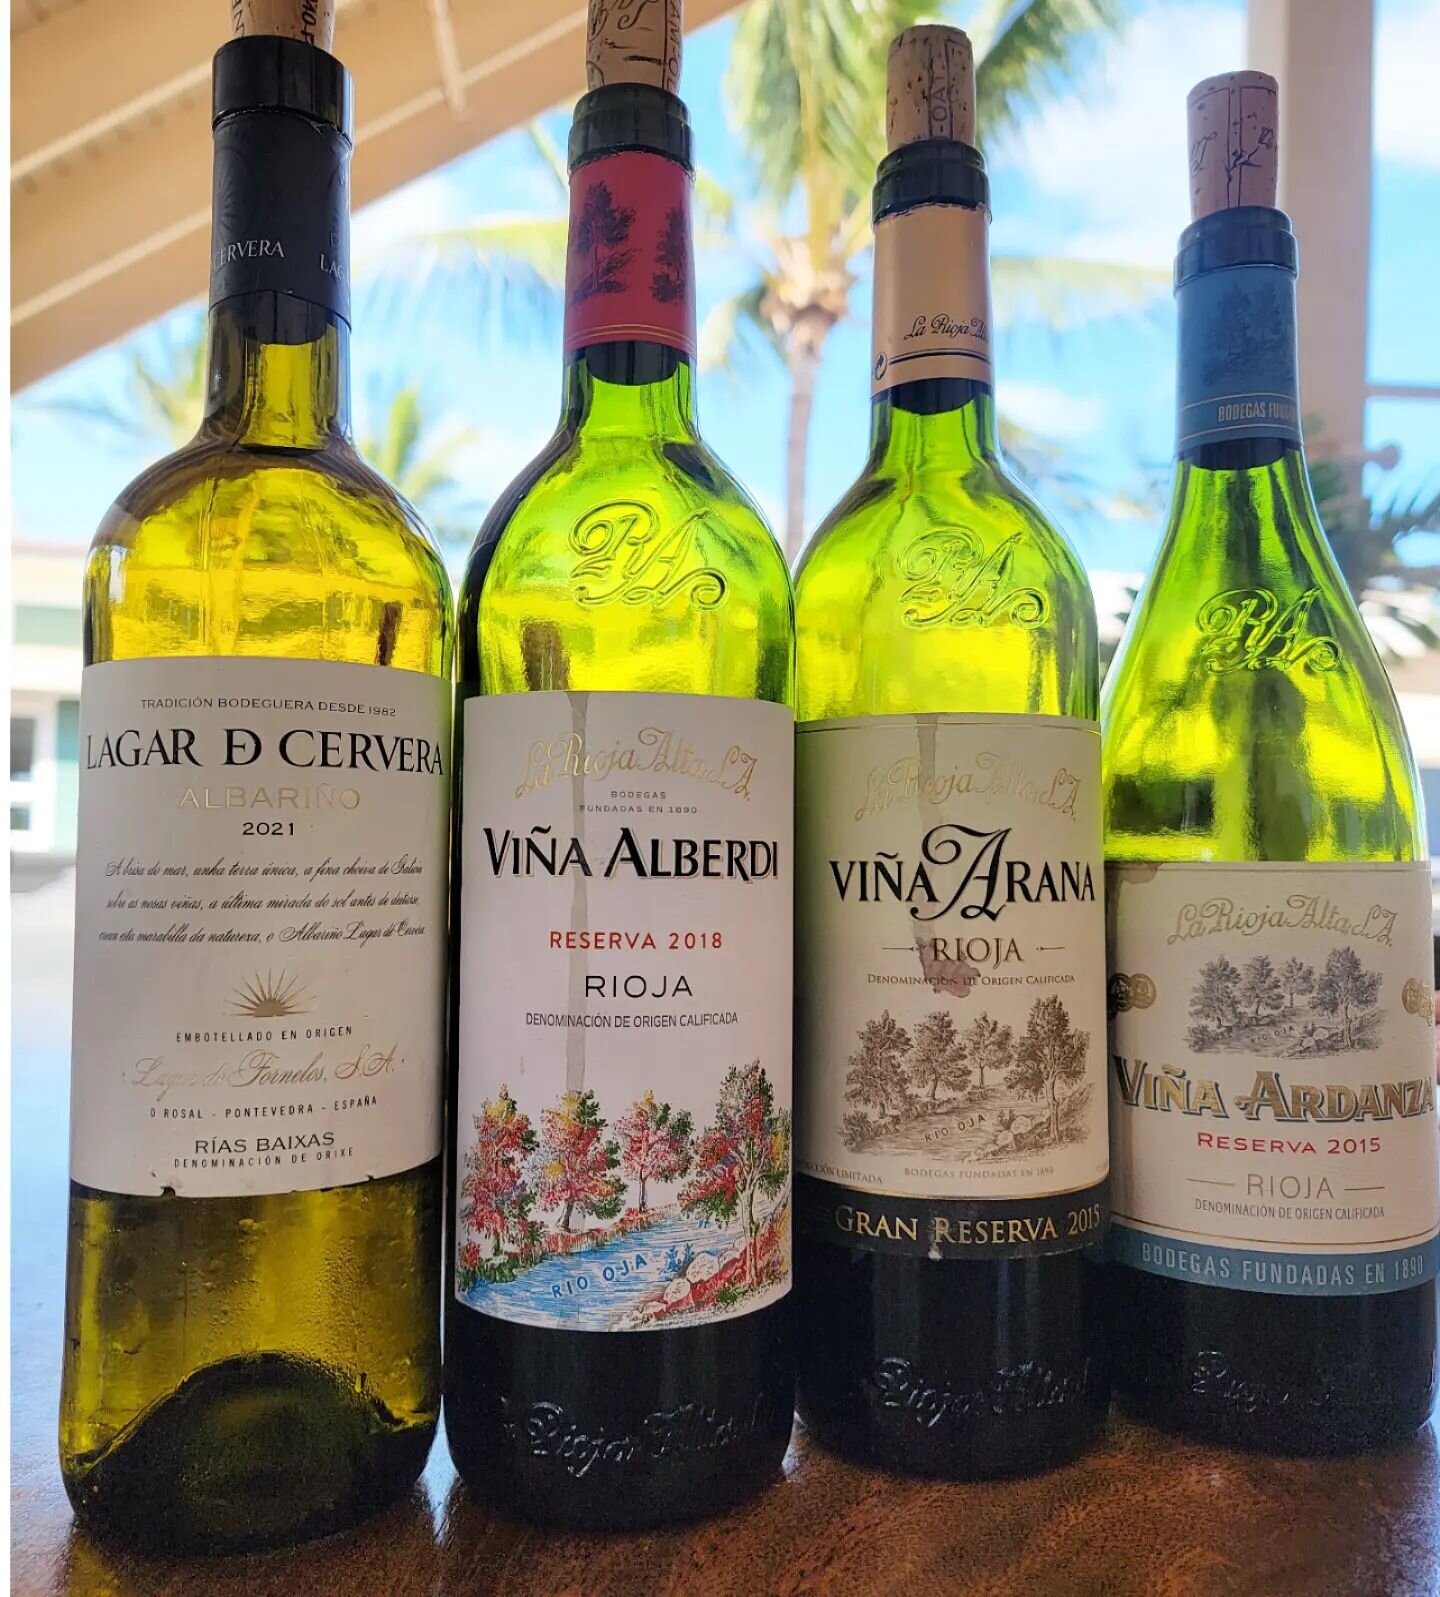 La Rioja Alta in our bags this week #obchawaii #lariojaalta 

Wines Pictured:

Lagar de Cervera Albari&ntilde;o 2021
Vi&ntilde;a Alberdi Reserva 2018
Vi&ntilde;a Ardanza Reserva 2015
Vi&ntilde;a Arana Gran Reserva 2015